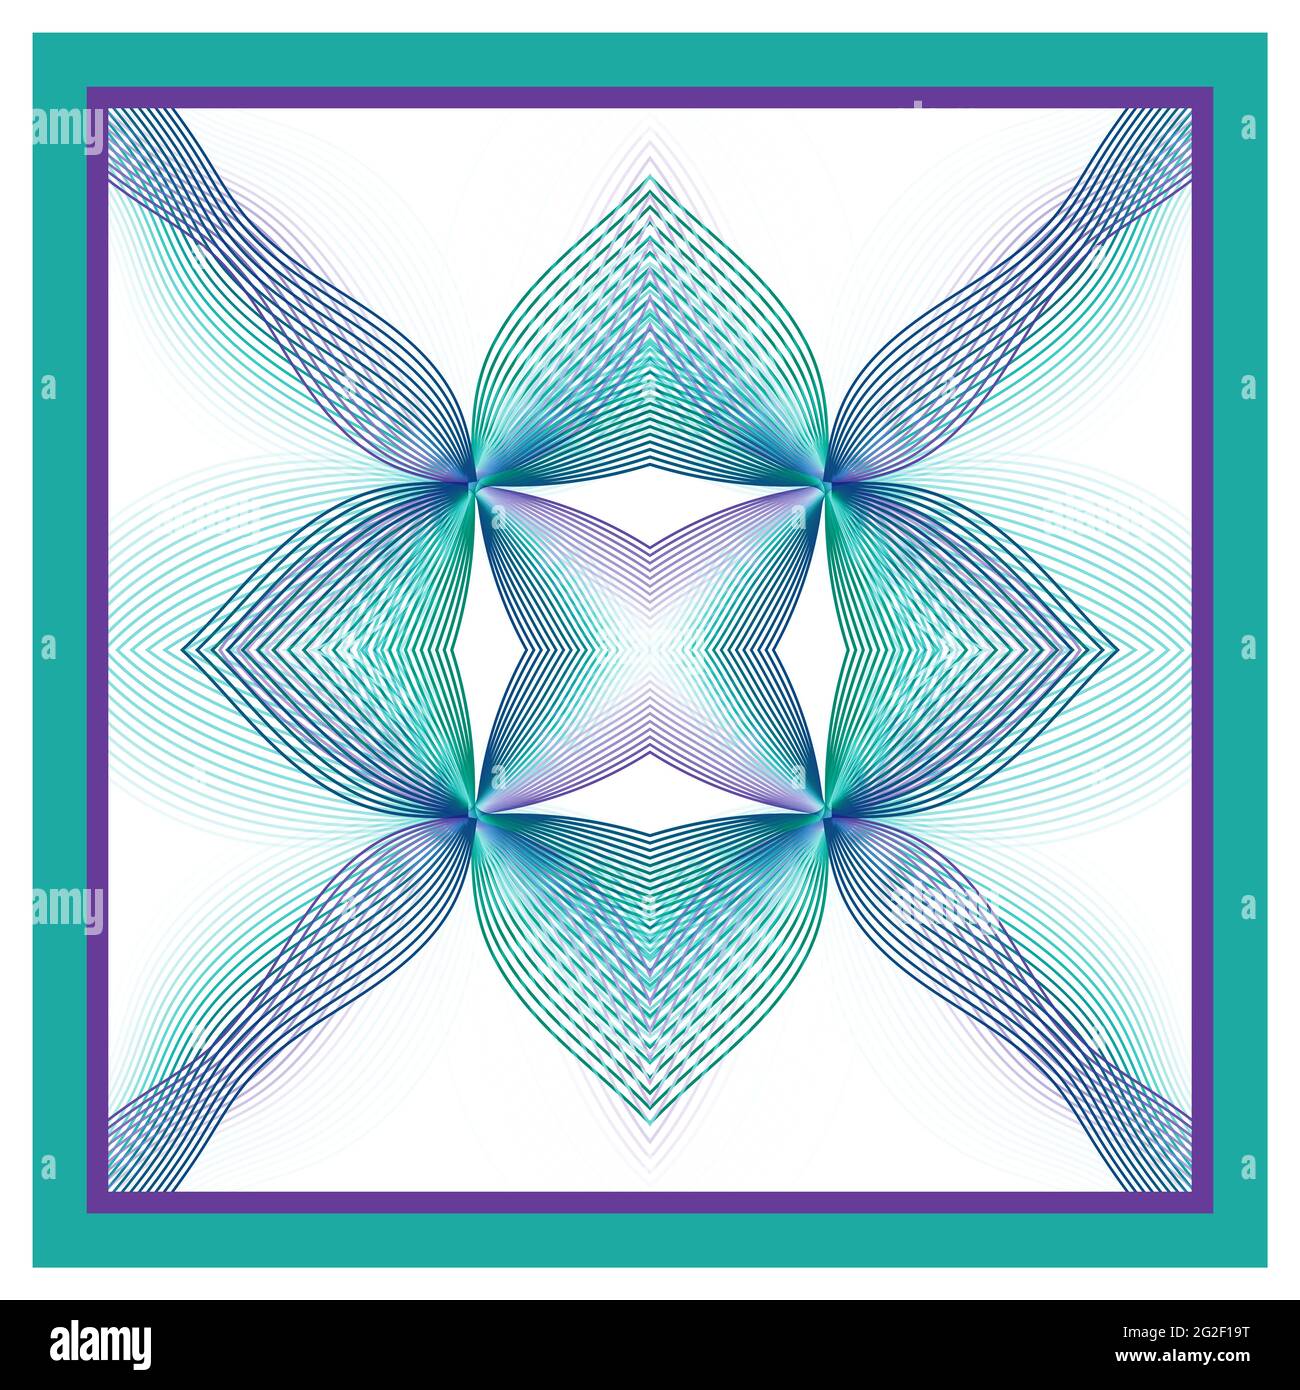 Schal, Bandana-Design. Blau, türkisfarbenes Ornament, weißer Hintergrund. Line Art mehrfarbig symmetrisches Muster. Kaleidoskop-Effekt, Spiegelreflexion Stockfoto